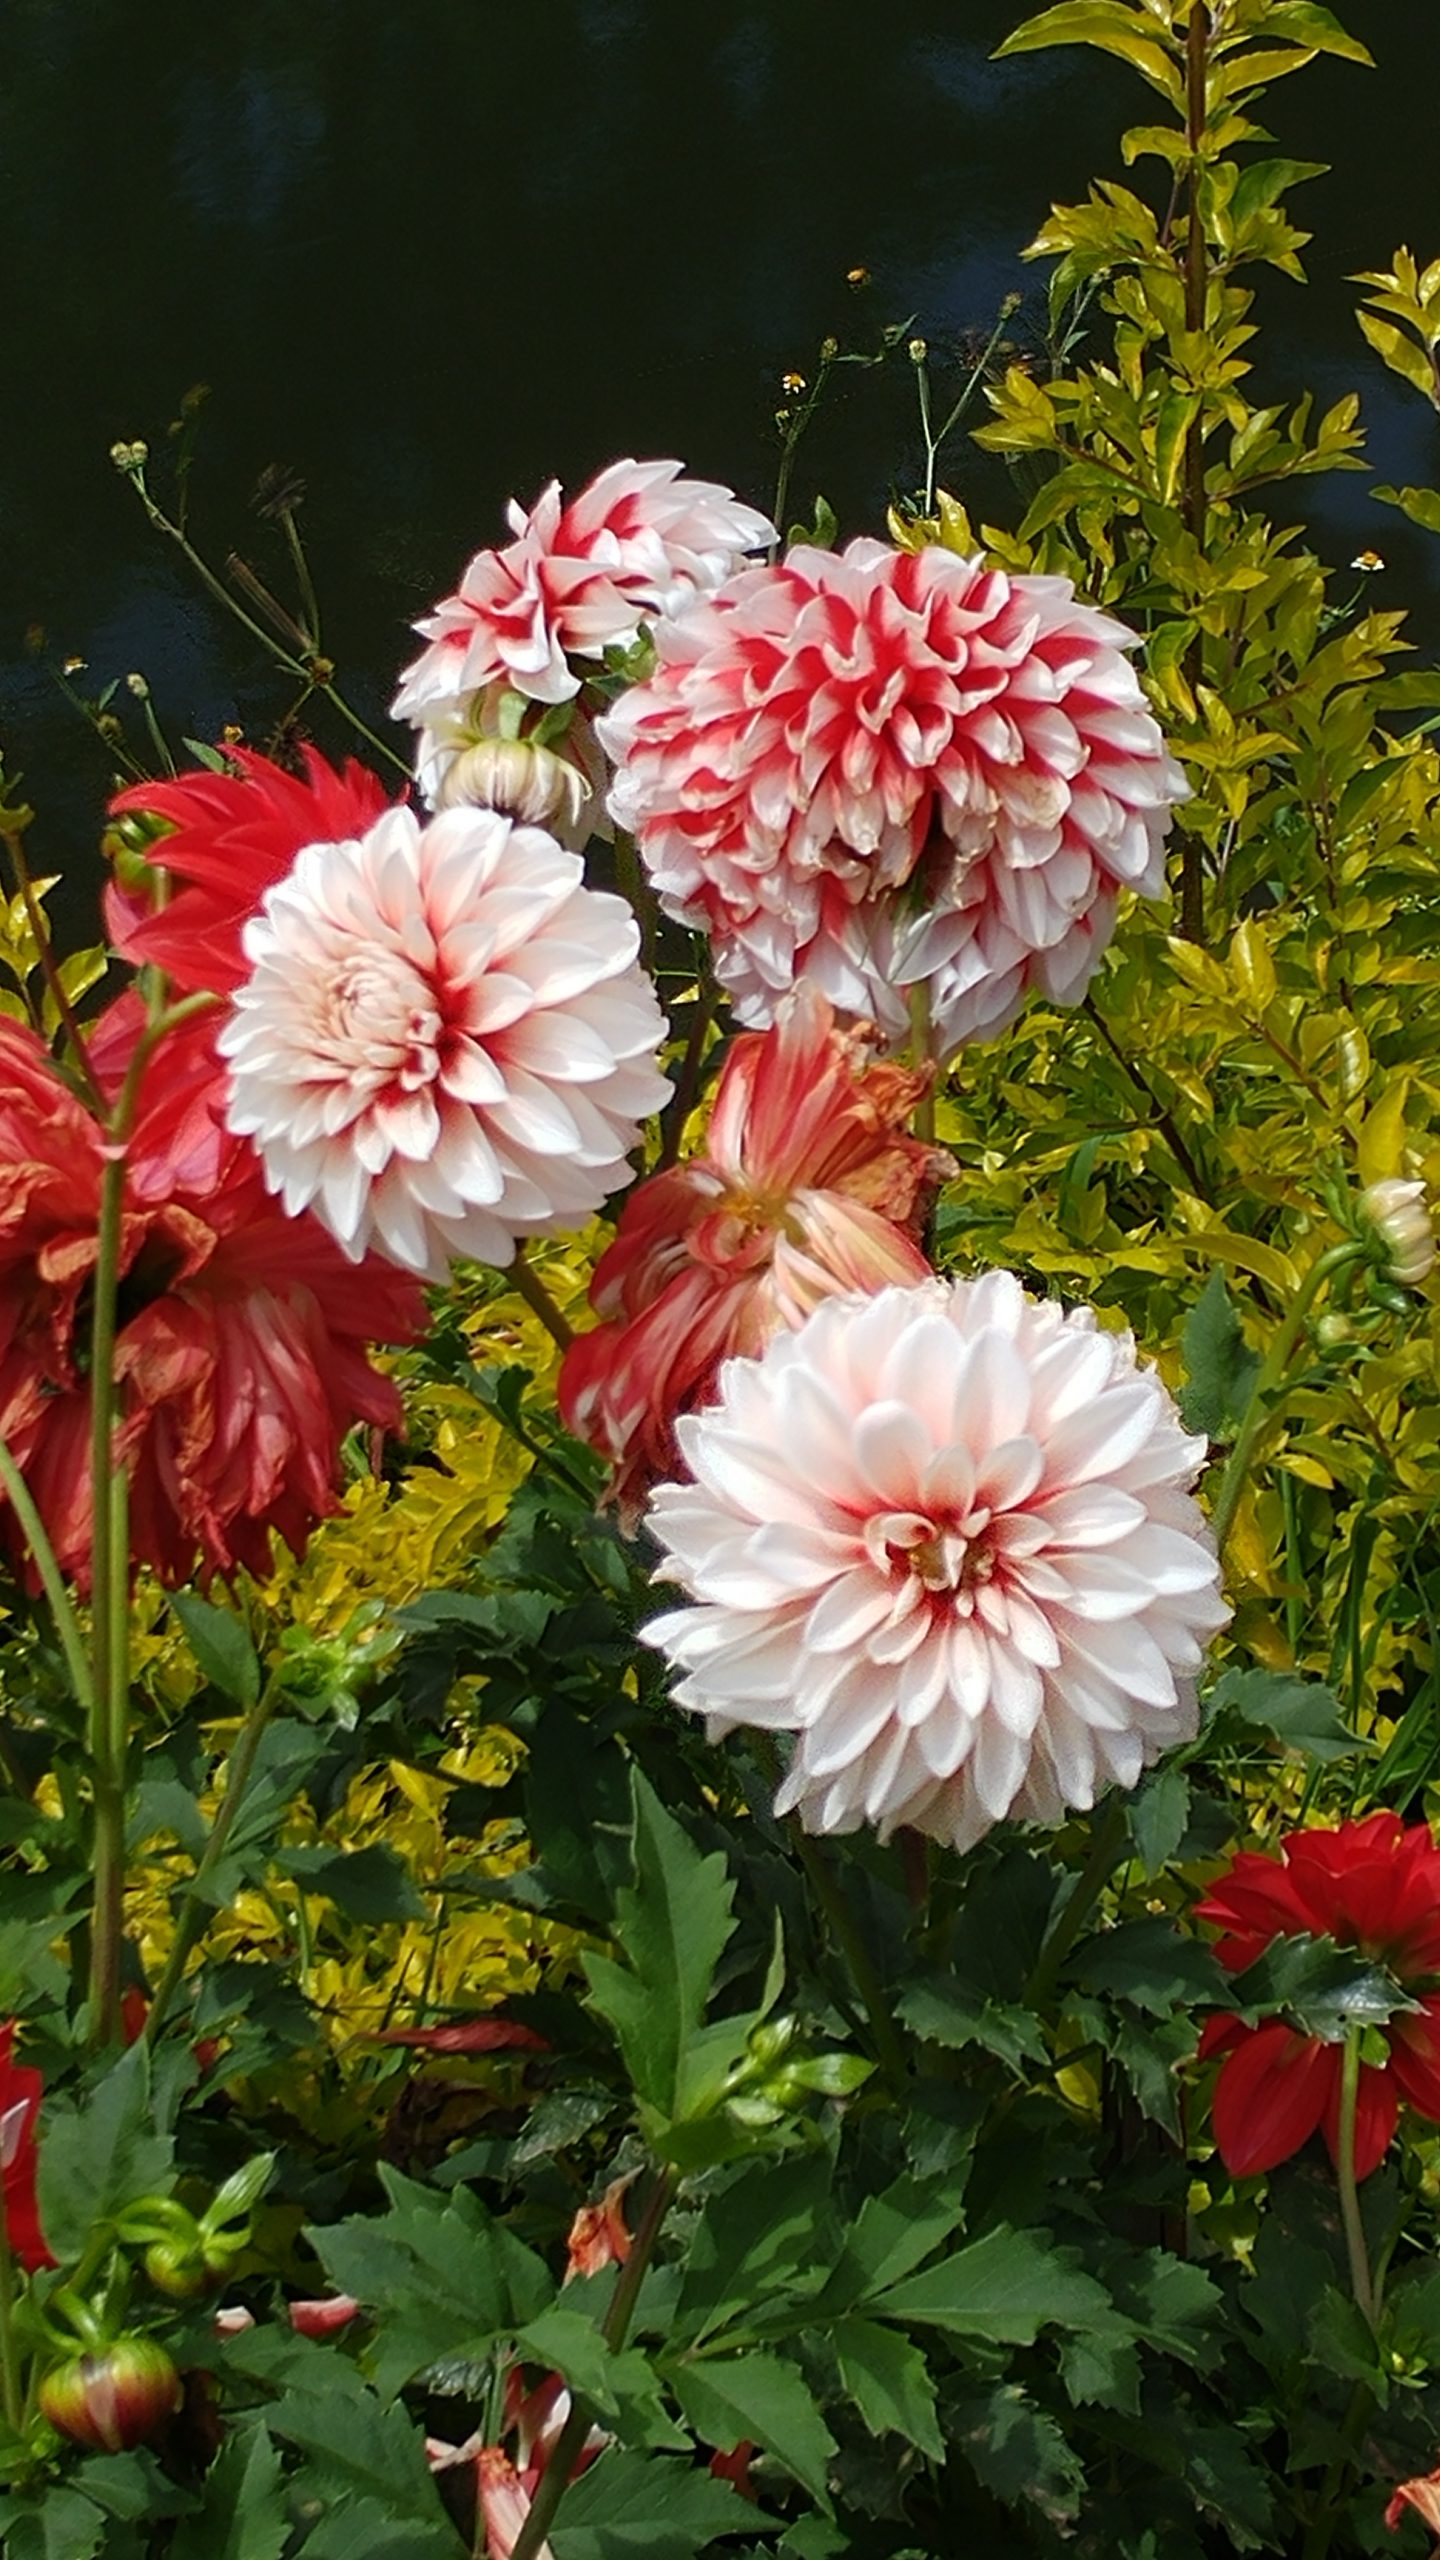 Flowers in a garden